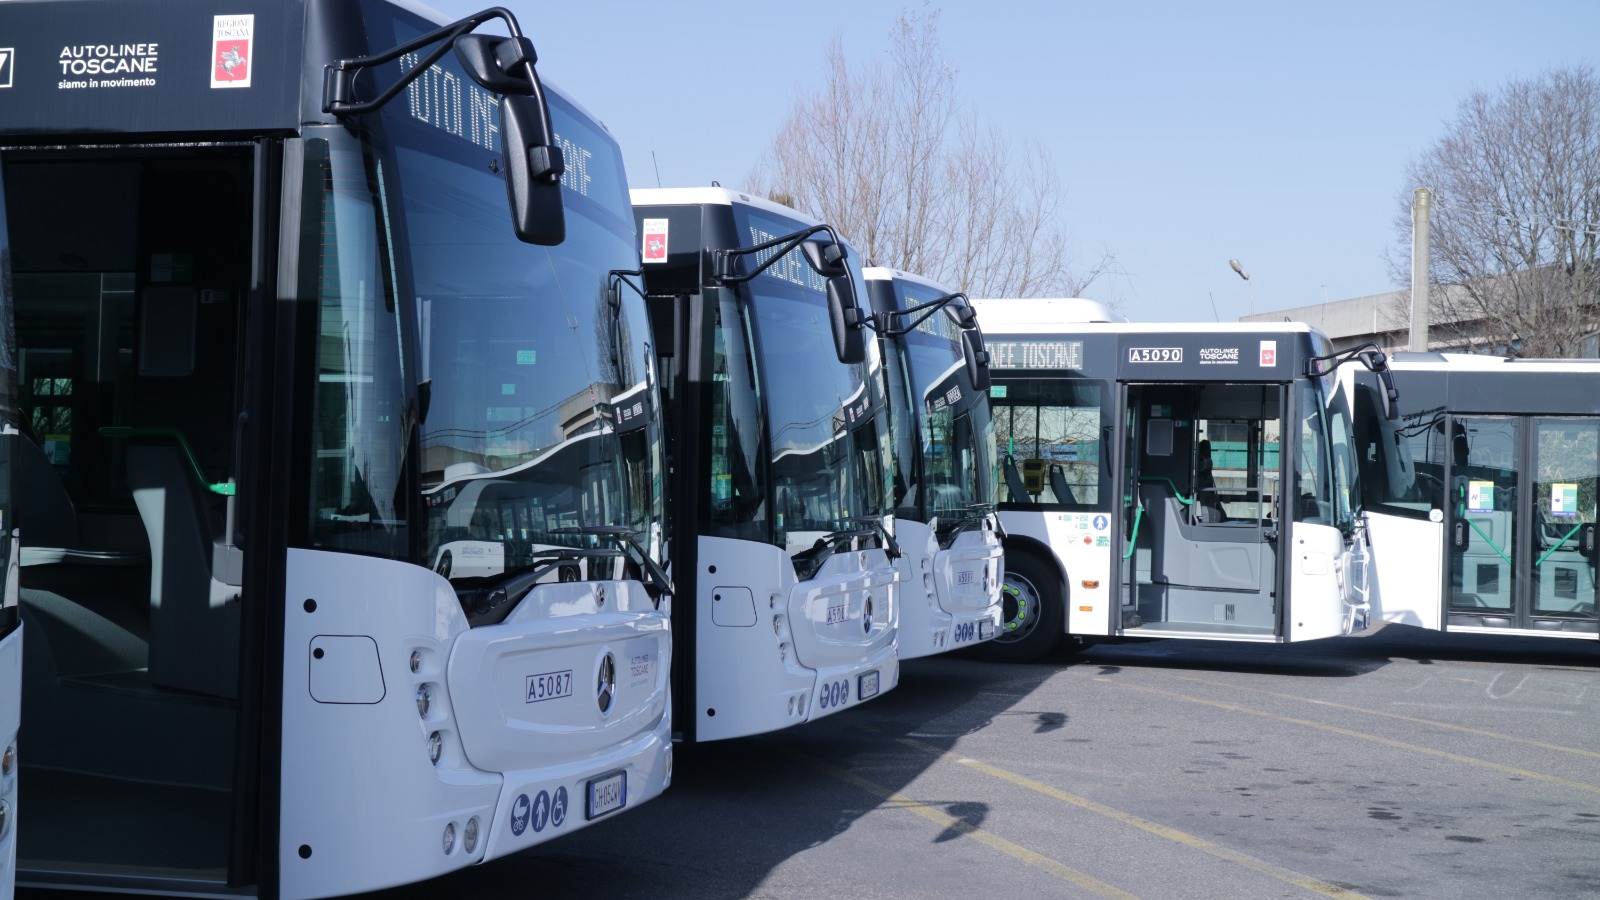 Ecco i 10 nuovi bus di Autolinee Toscane, la soddisfazione di Giani e Baccelli